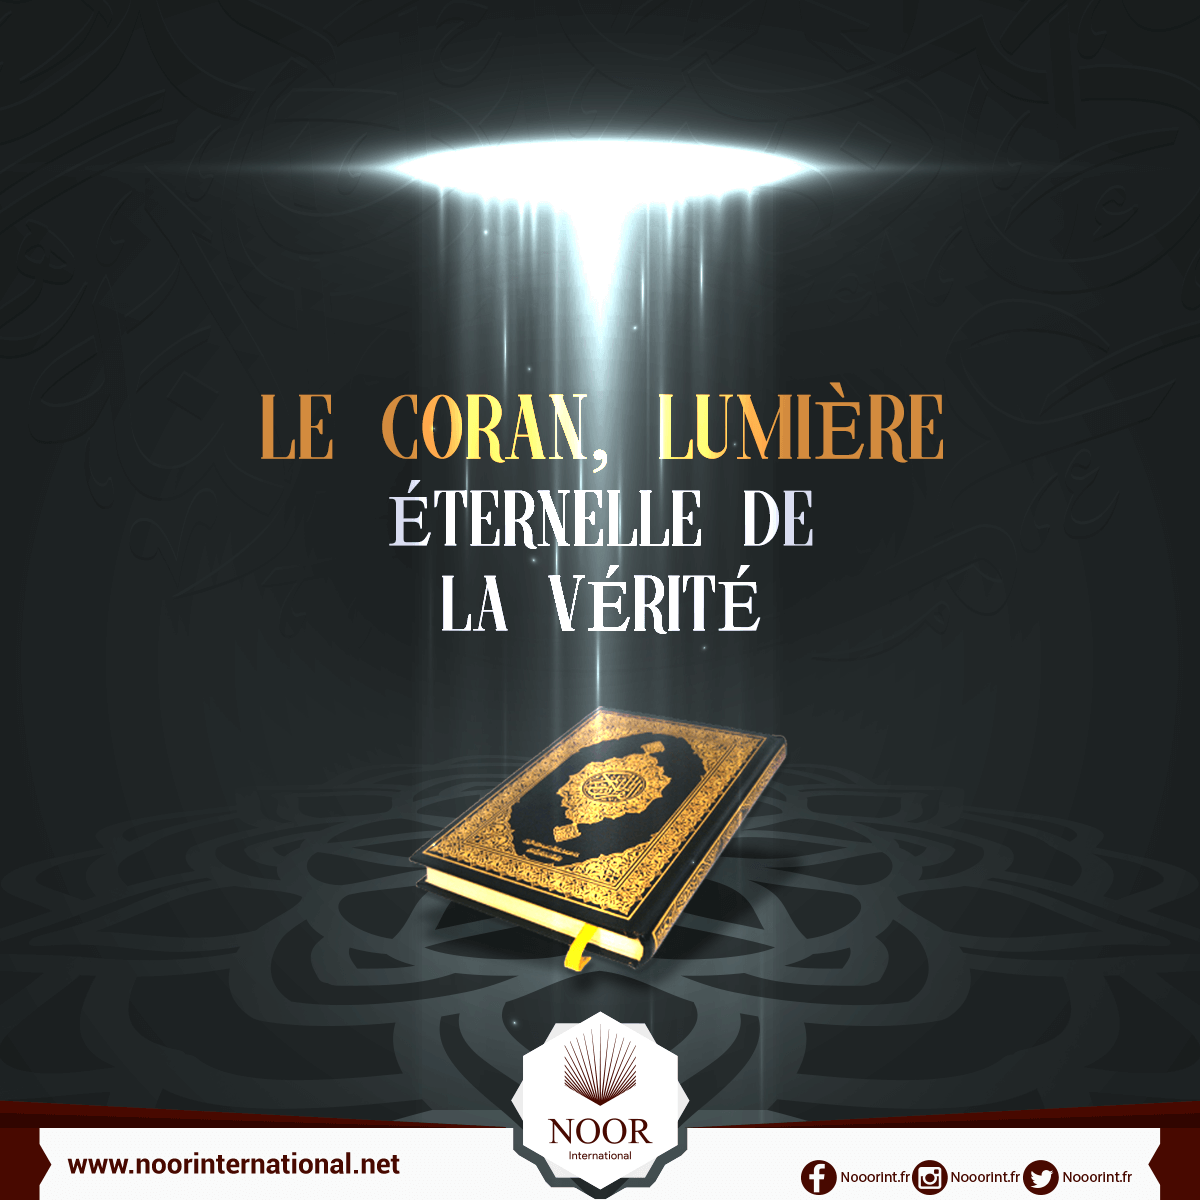 Le Coran, lumière éternelle de la vérité